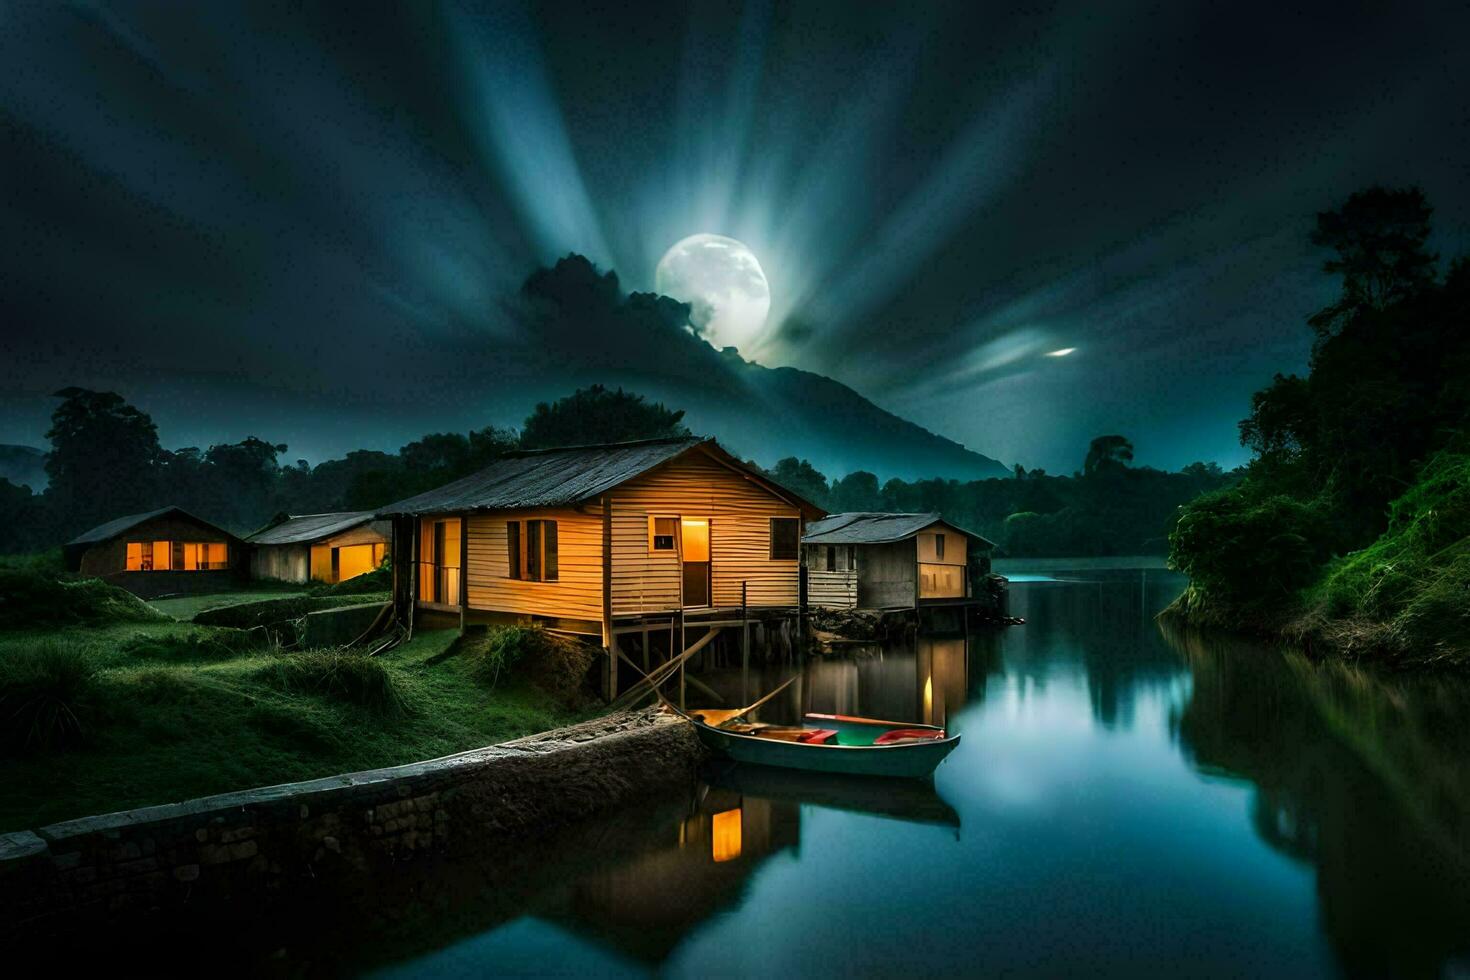 foto papel de parede a céu, noite, lua, barco, casa, rio, água, luar. gerado por IA